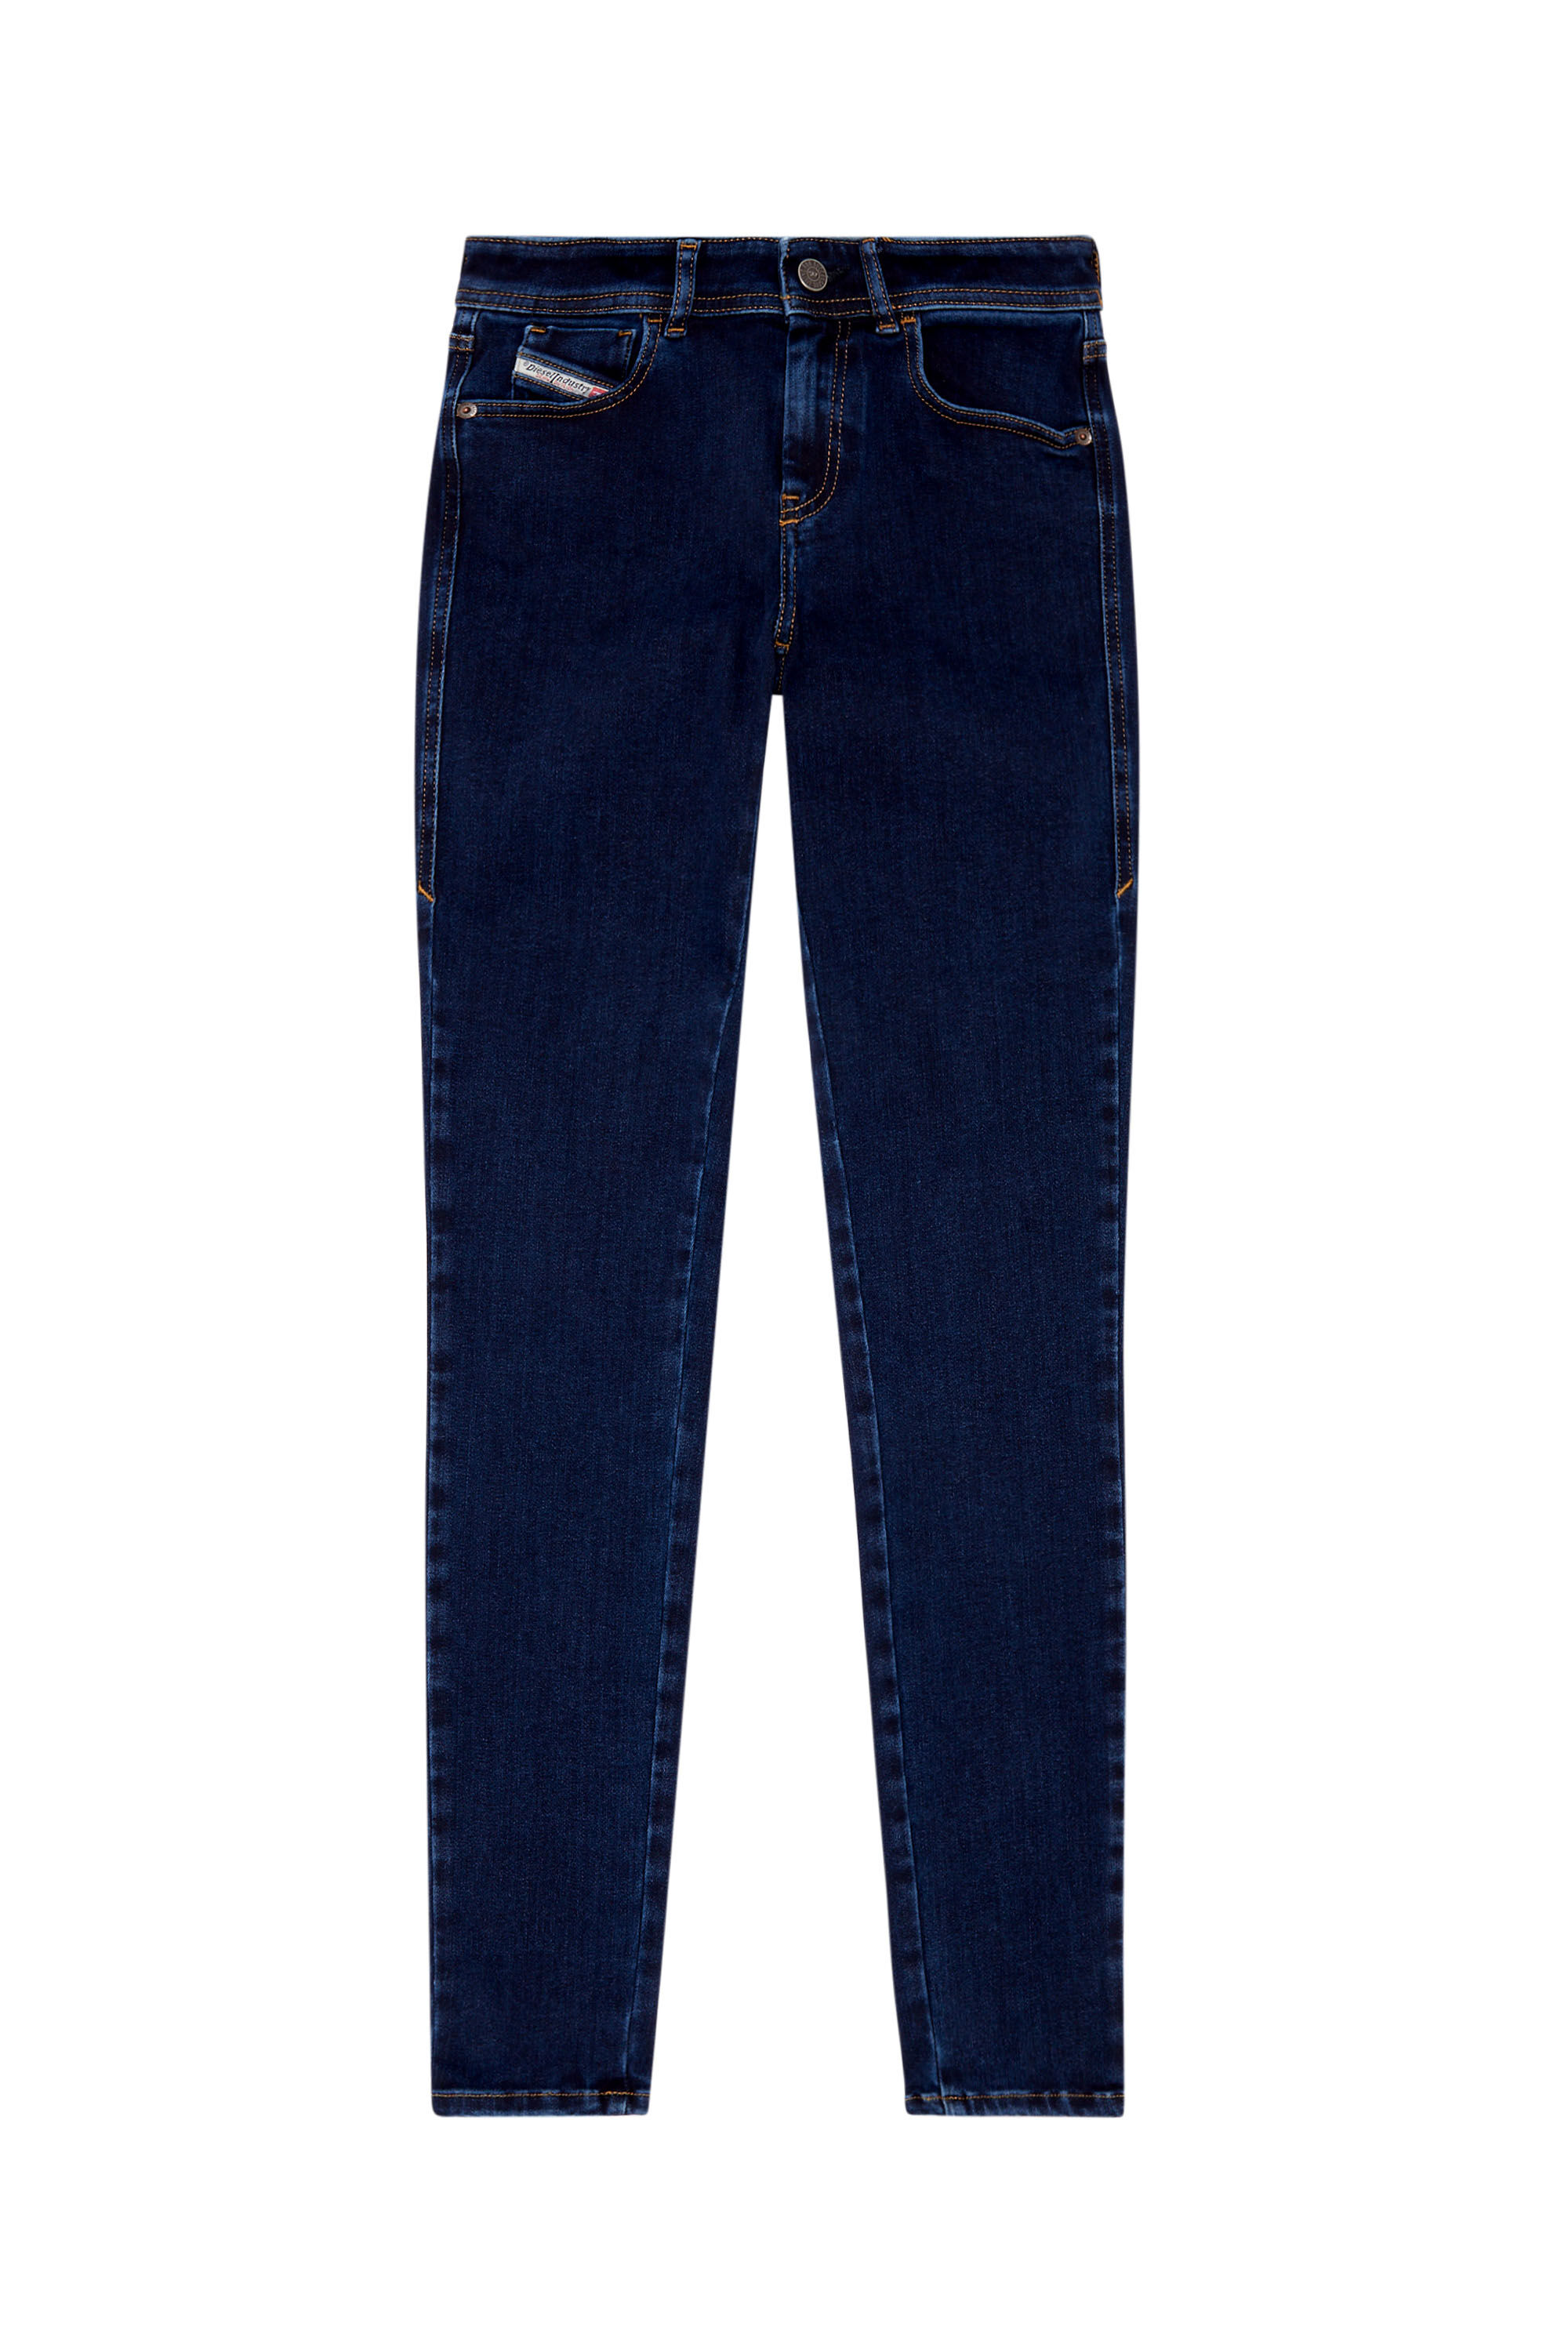 Diesel - Super skinny Jeans 2017 Slandy 09H80, Dark Blue - Image 2